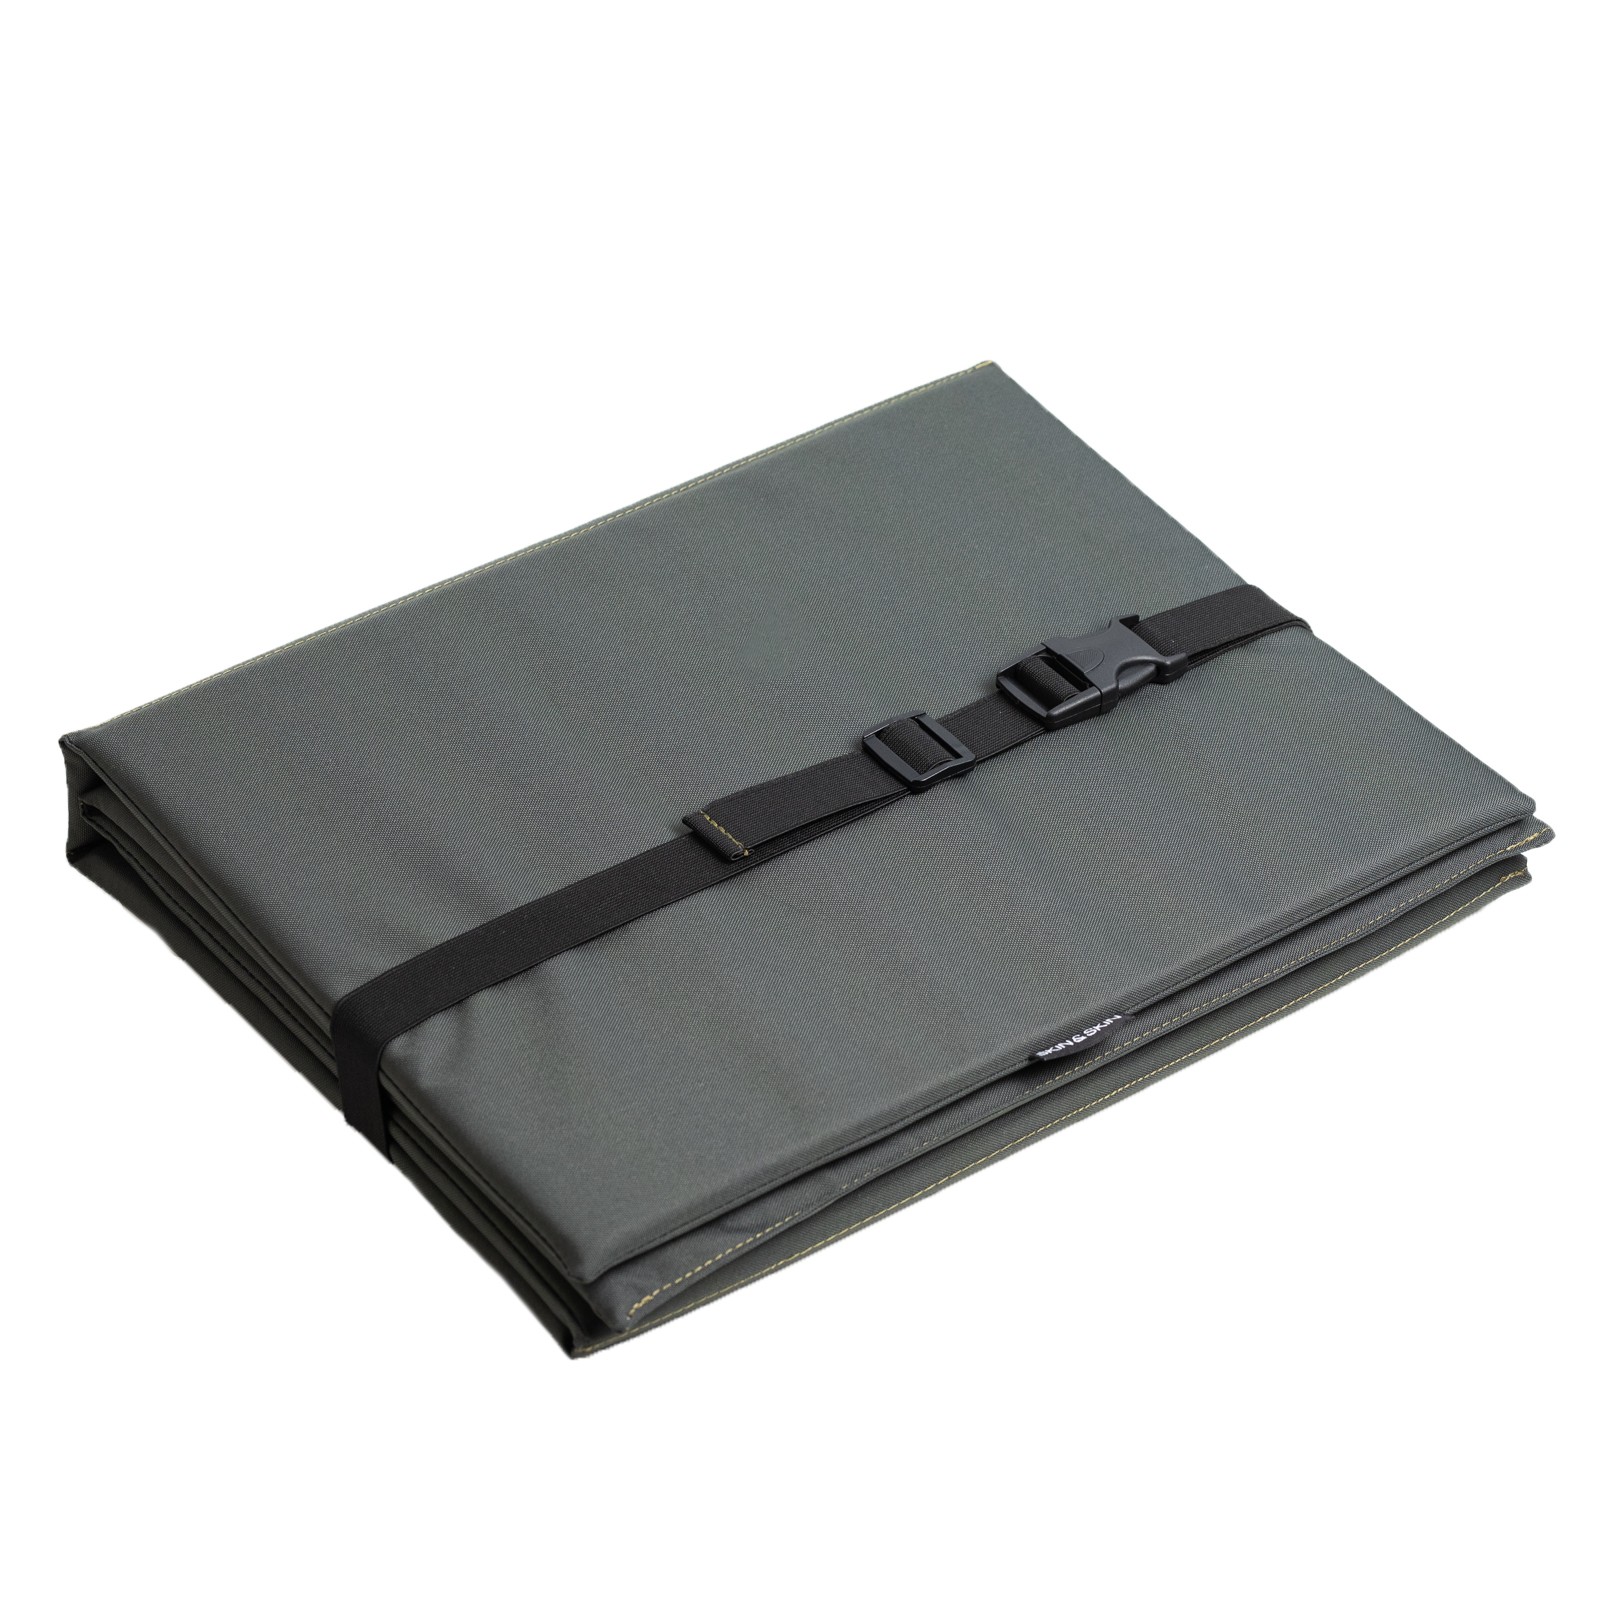 Olive sleeping pad molle system, seat pad khaki, nylon groundsheet 10mm